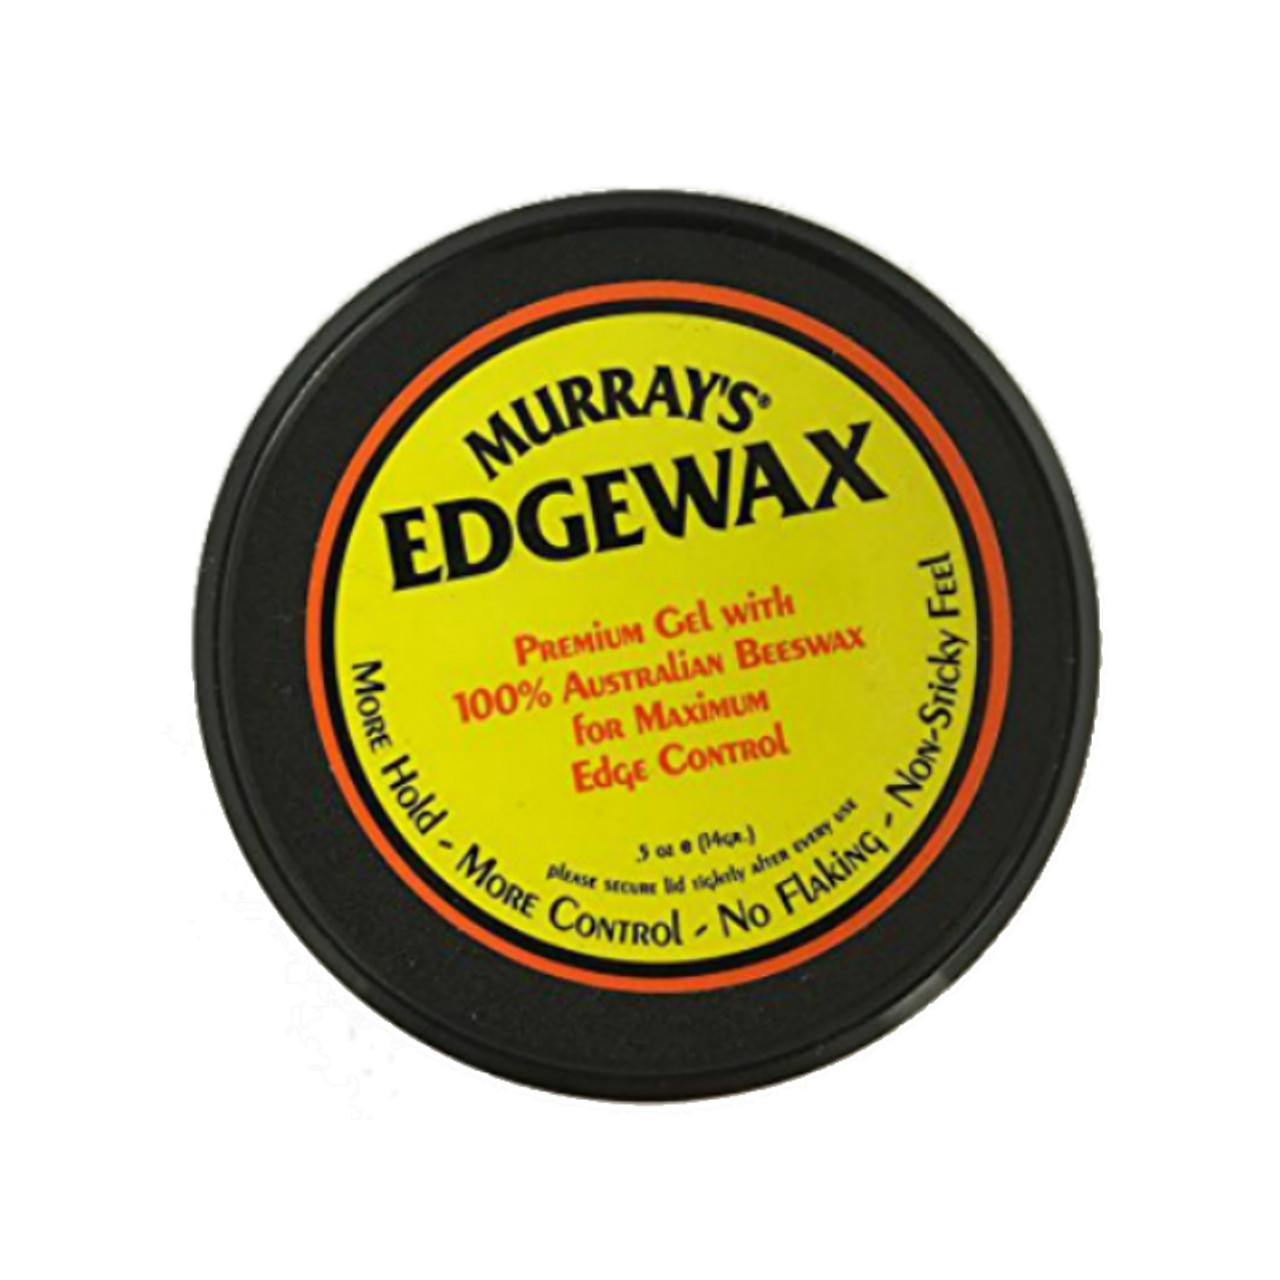 Murray's Edgewax Premium Gel (.5 oz.) - NaturallyCurly